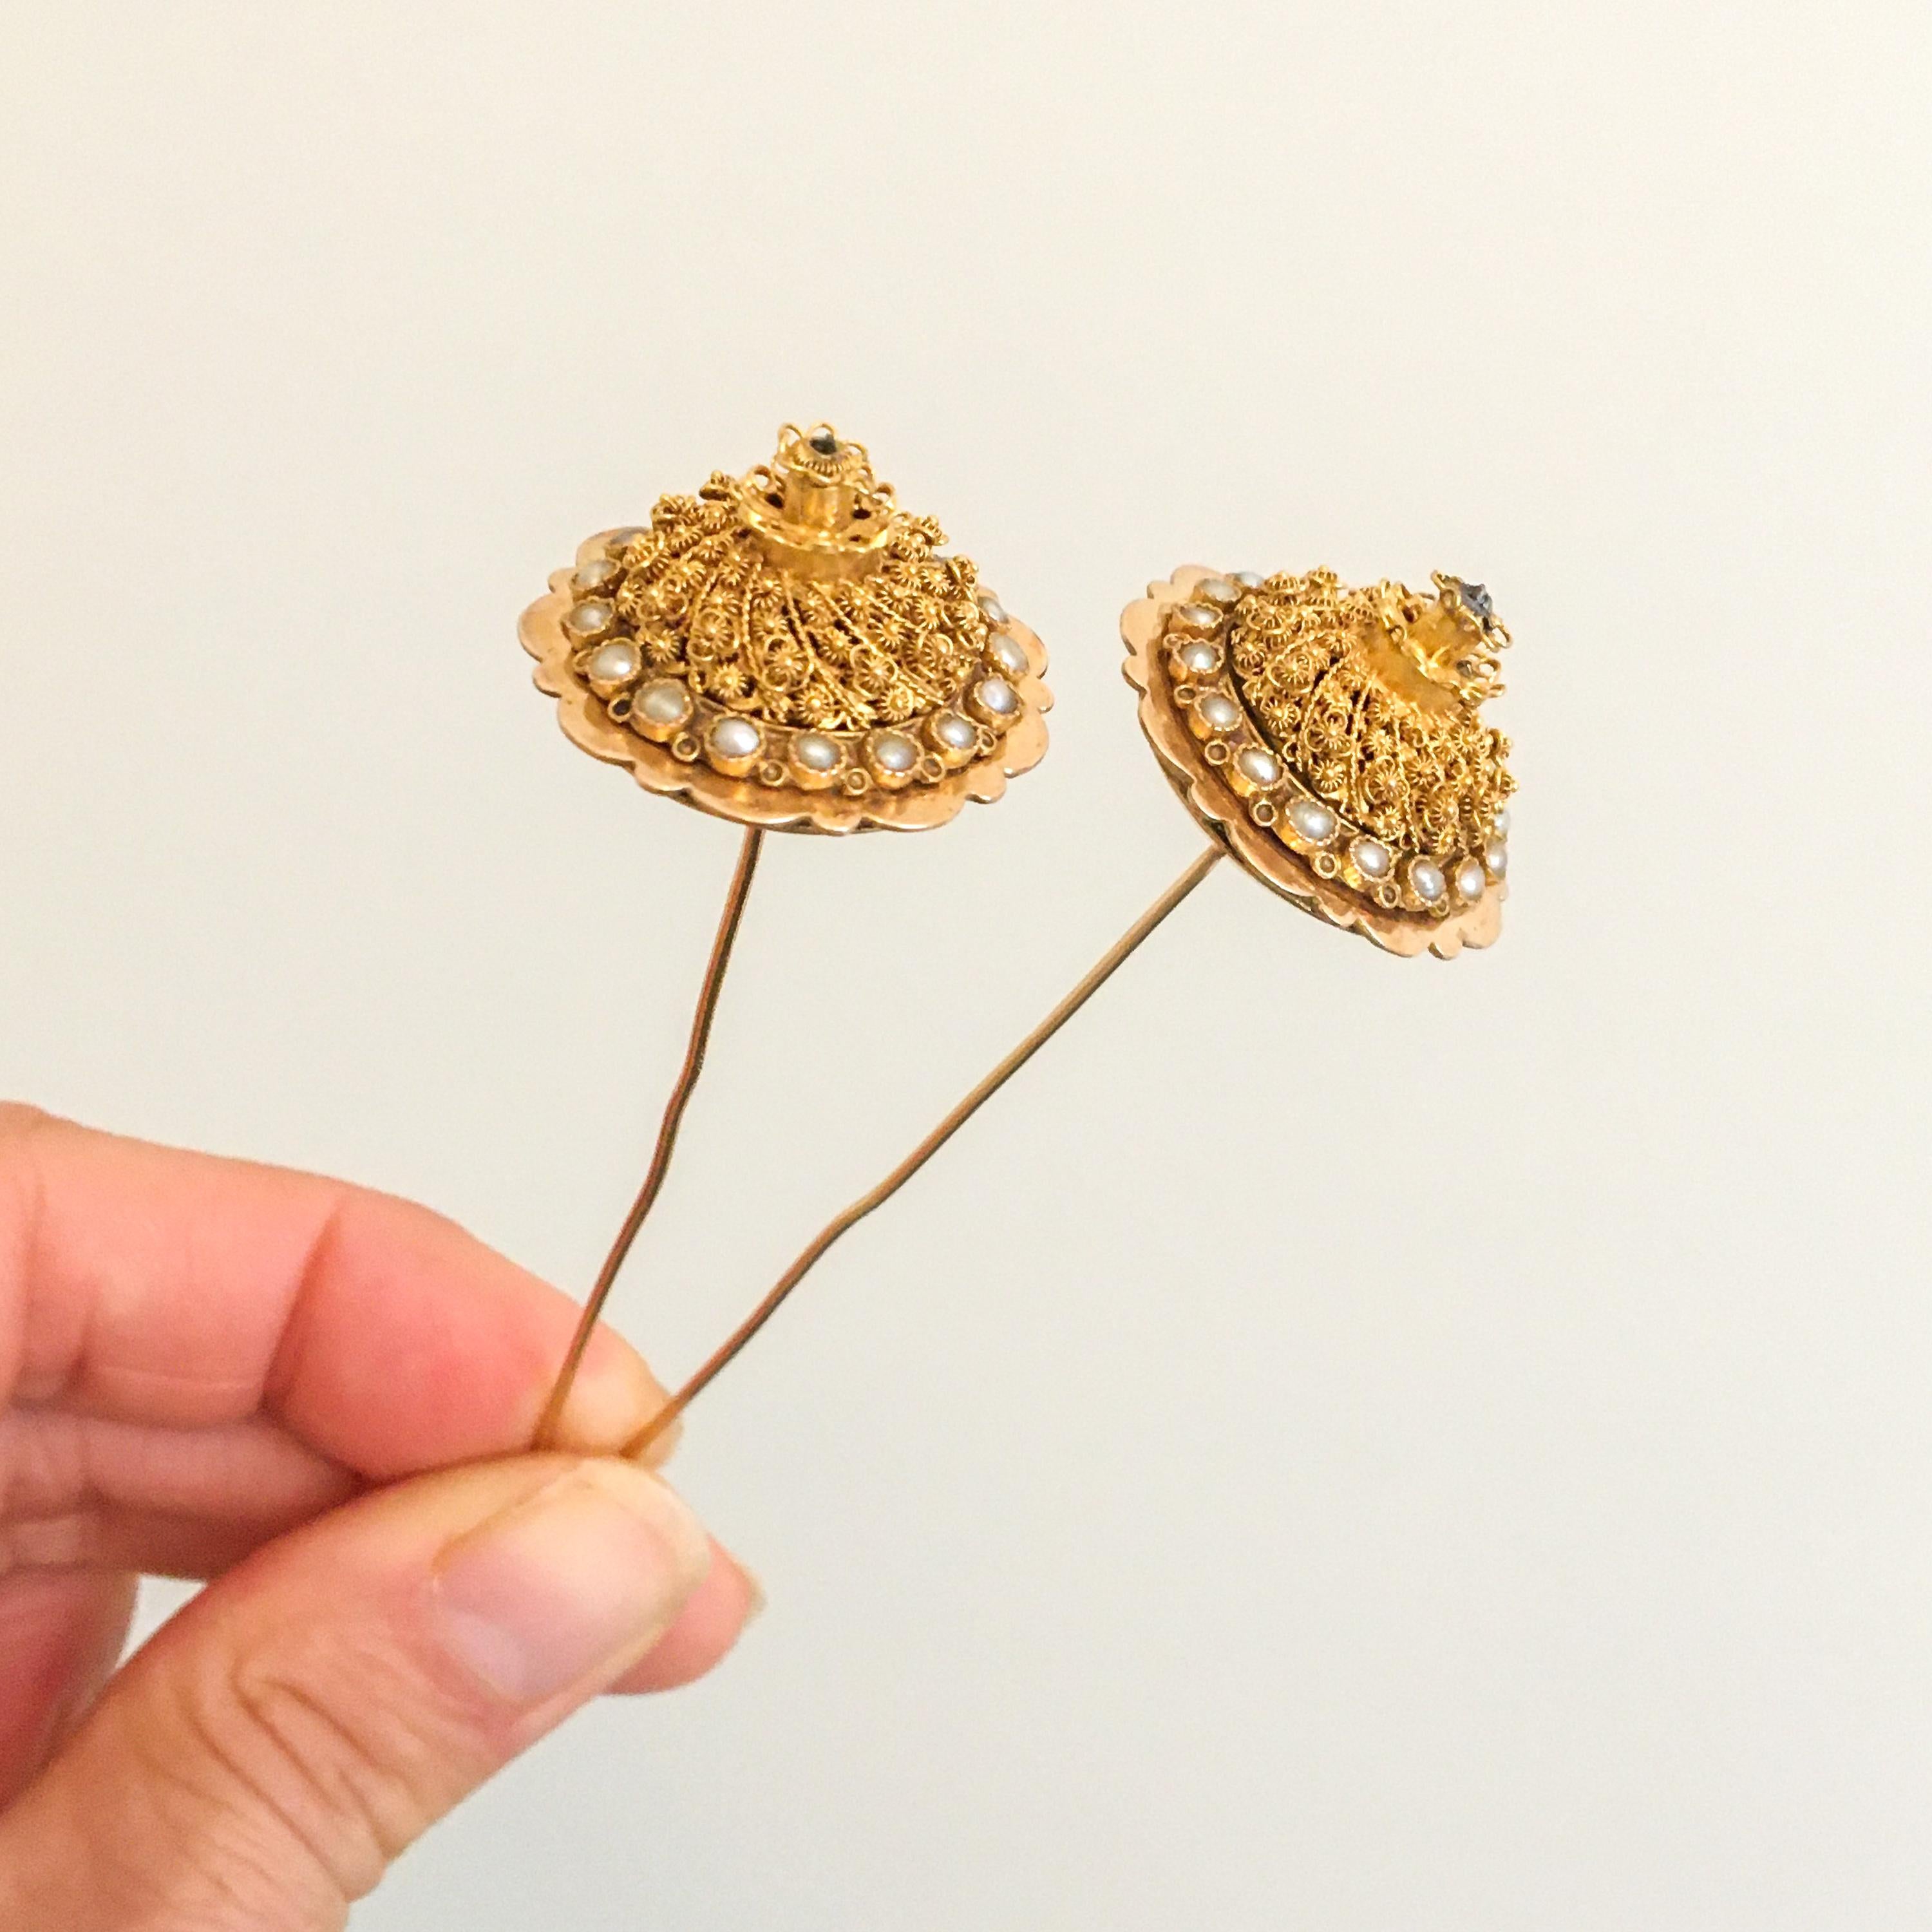 Dies ist ein Paar von antiken 14 Karat Gelbgold filigran und Samen Perle Revers oder Stick Pins. Diese Perlenstecknadeln, auf Niederländisch 